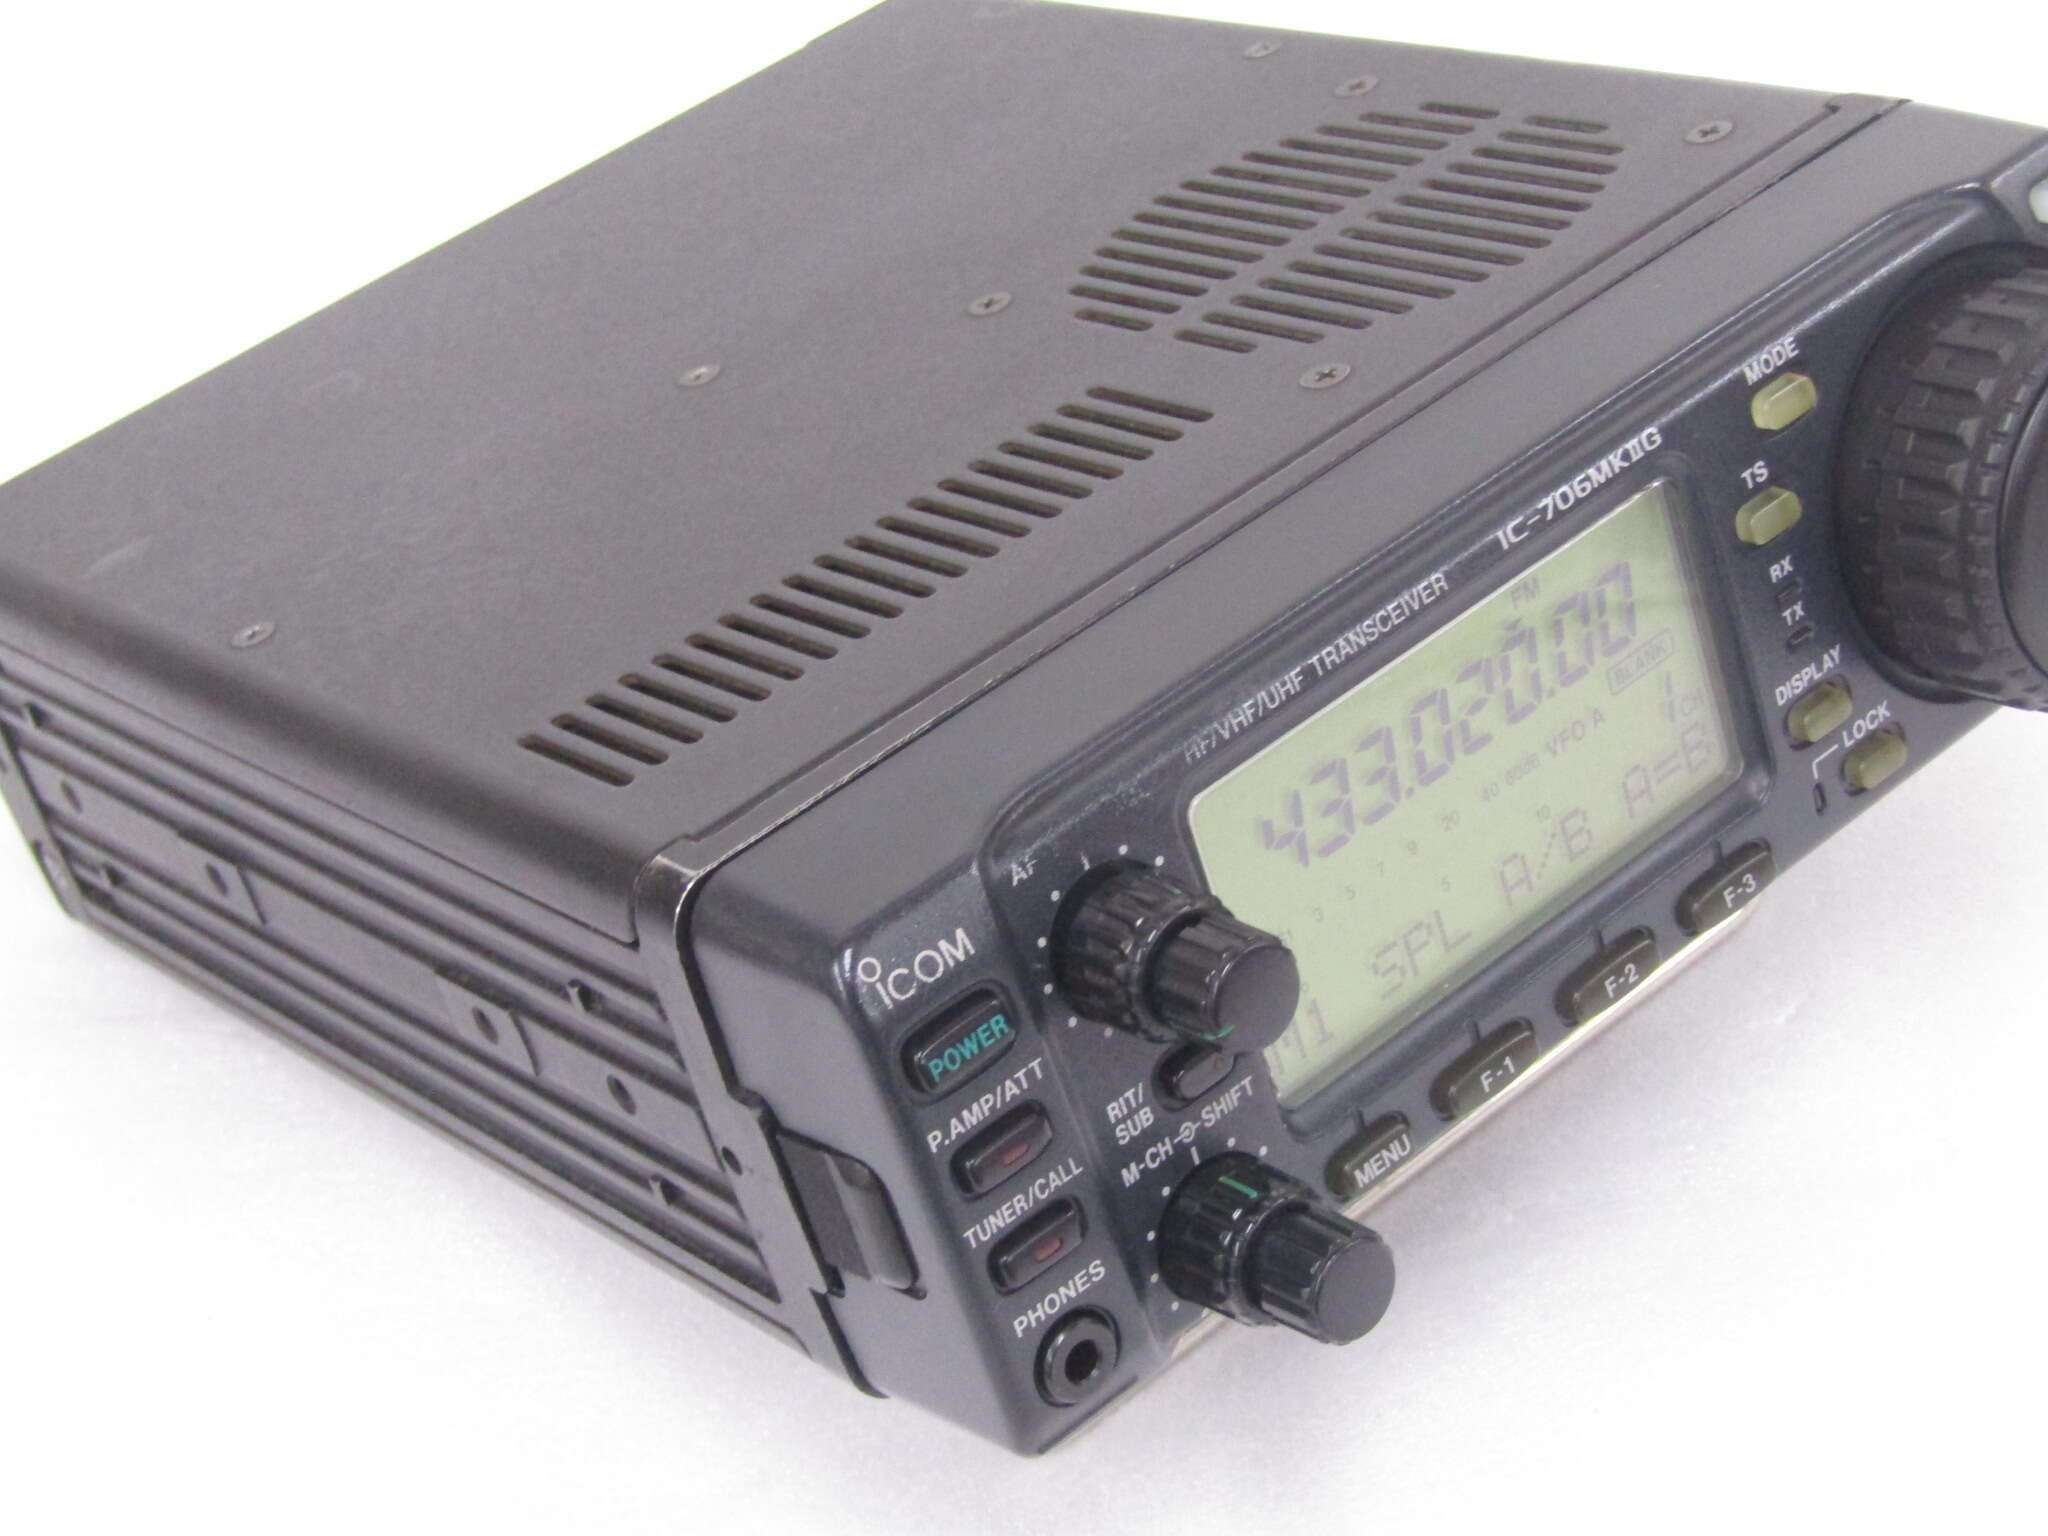 ー品販売ー品販売ICOM IC-706Mk2G 本体のみジャンク アマチュア無線 